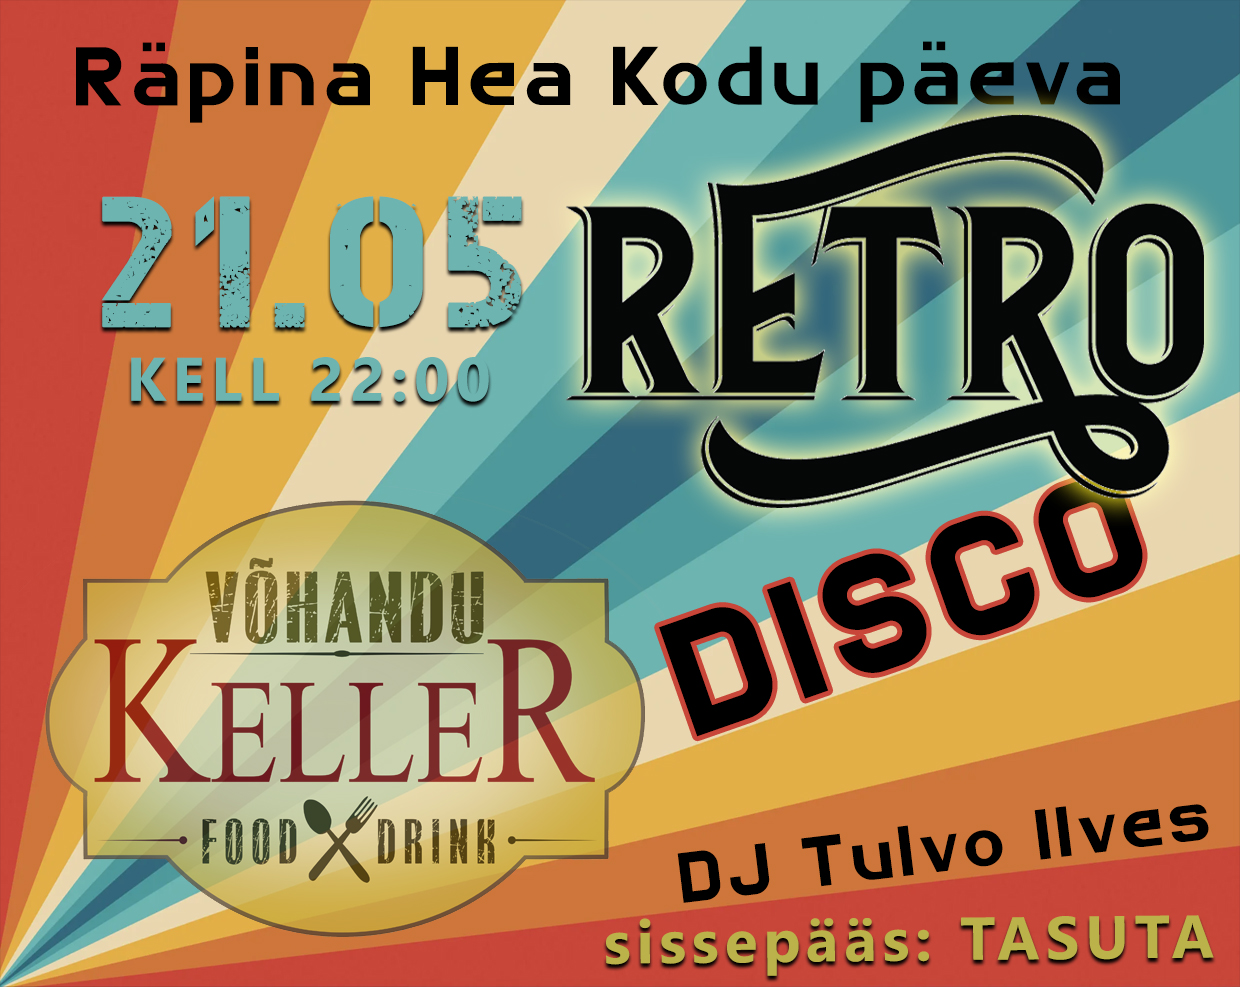 Räpina hea kodu päeva retro disco @ Võhandu Kelleris | Räpina | Põlva maakond | Eesti